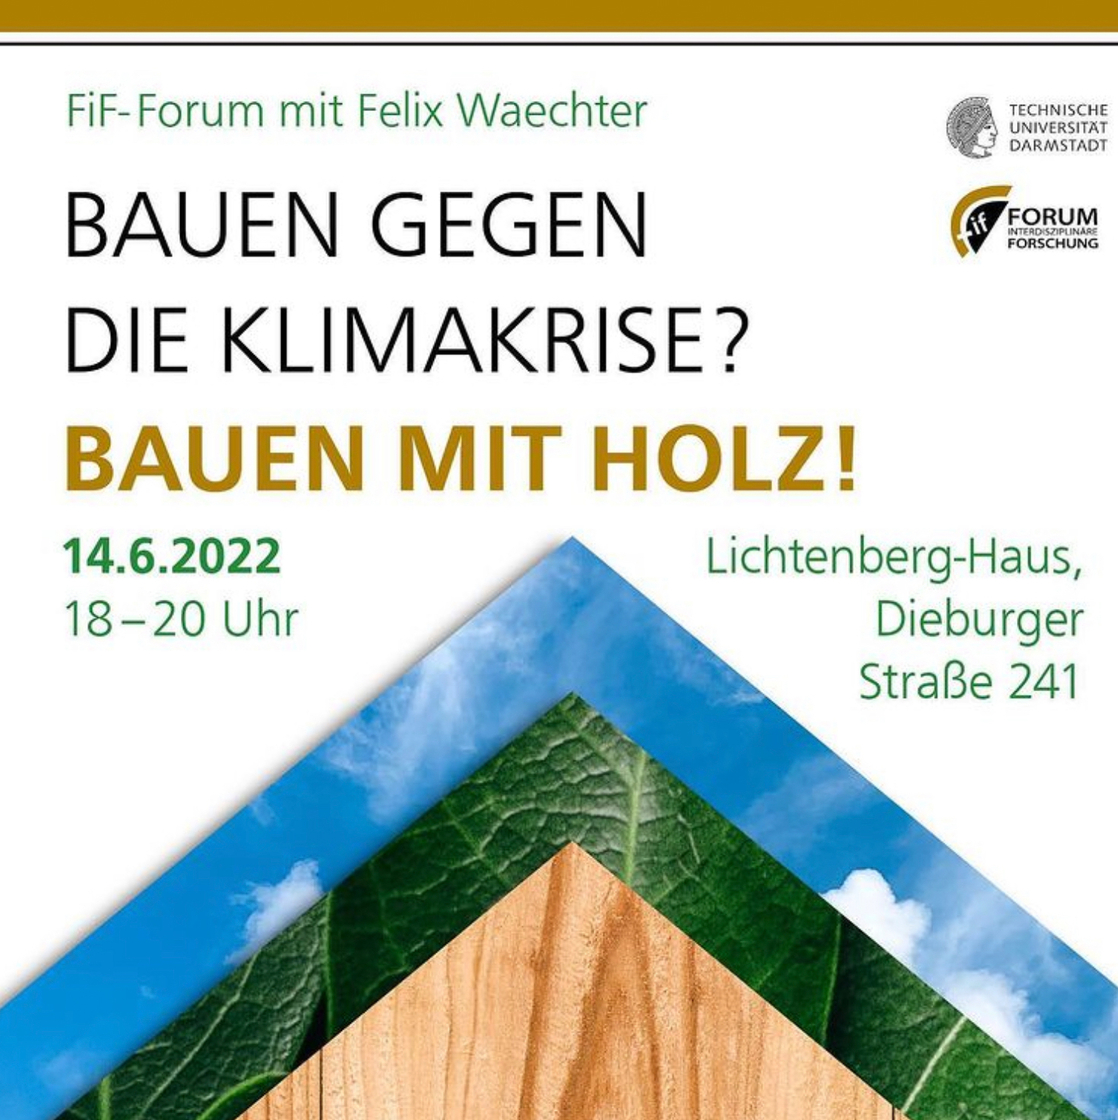 fif-forum_bauen-14.06.2022.jpg